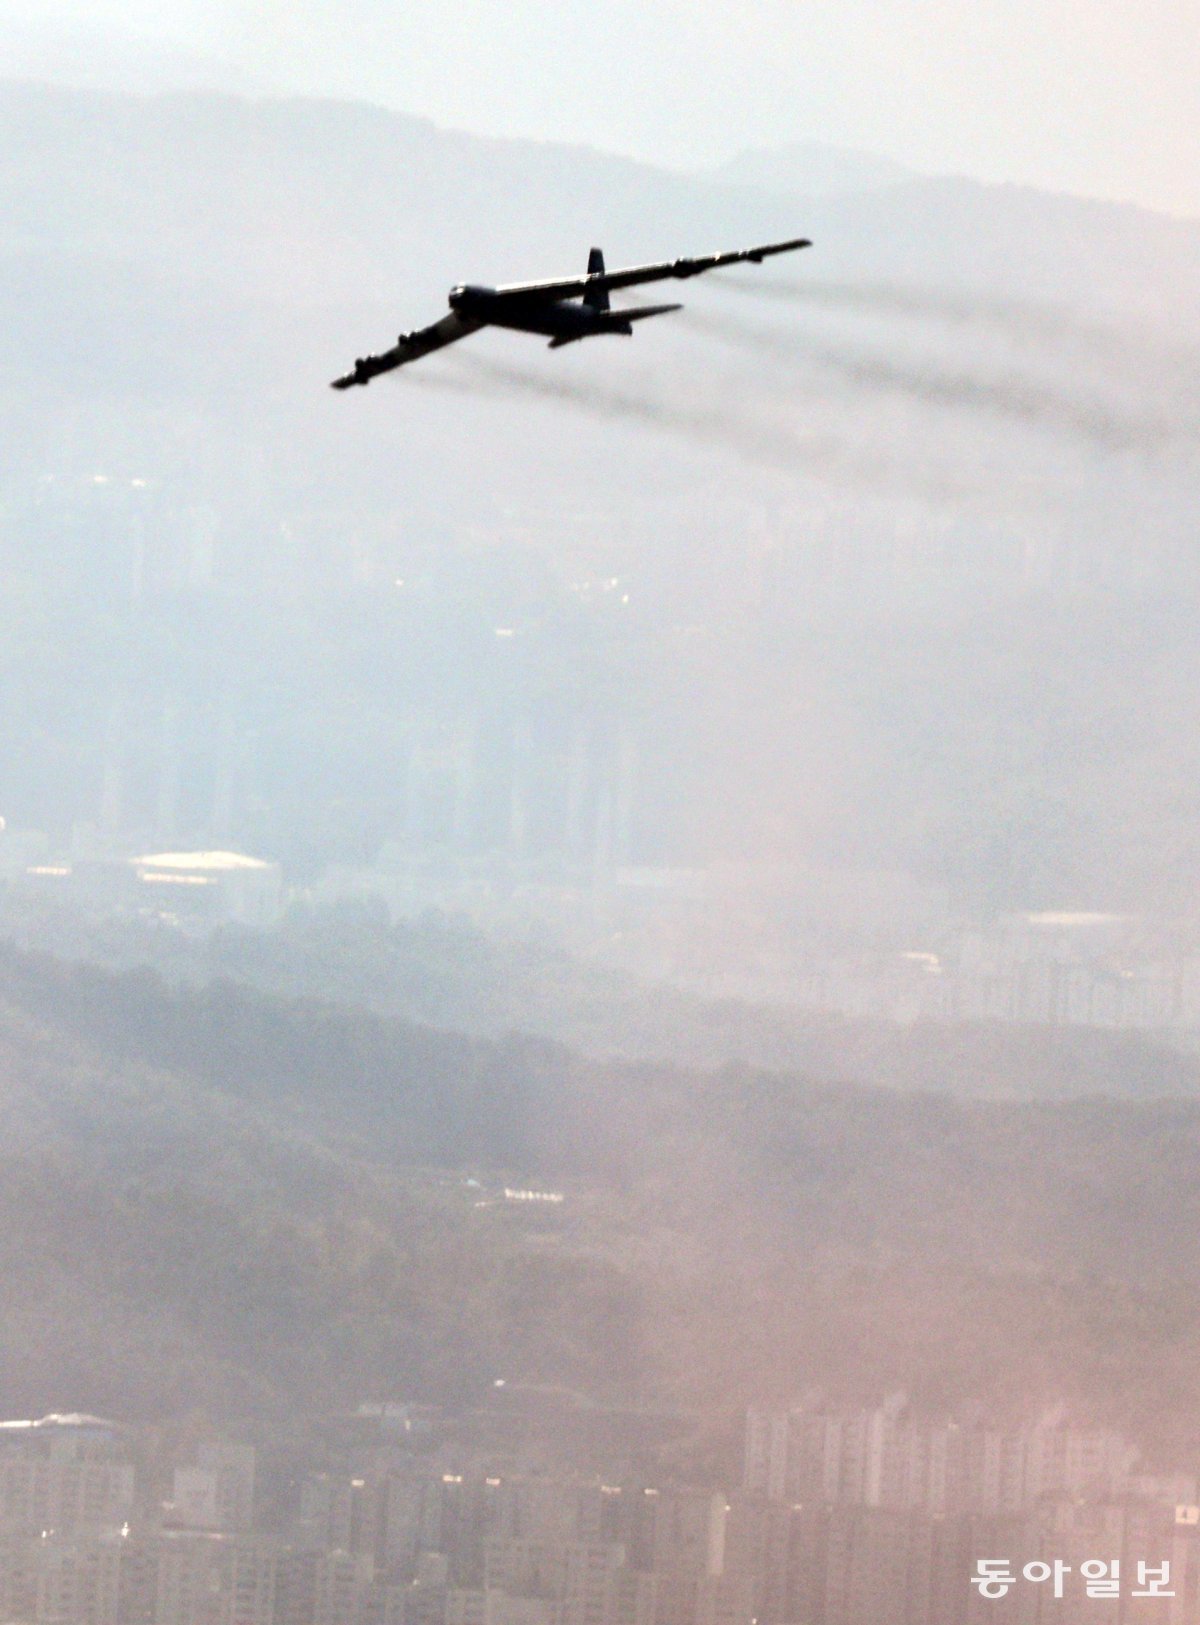 미군 전략폭격기 B-52H가 서울 상공을 가로지르고 있다. 최혁중 기자 sajinman@donga.com